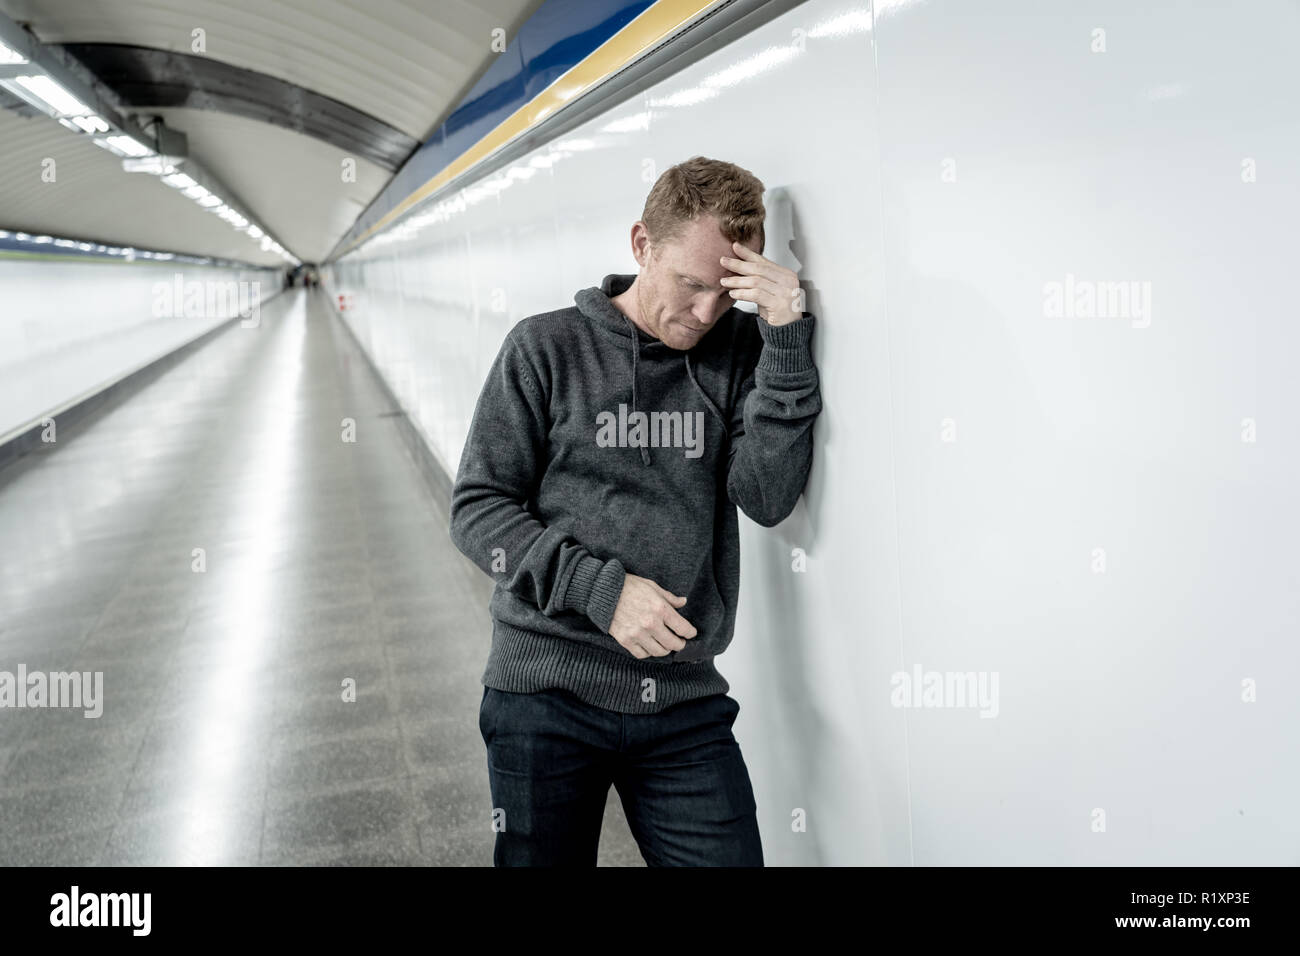 Miserable arbeitslose junge Mann weinen Drogensüchtigen Obdachlosen in Depression stress sitzen auf dem Boden Street U-Bahn Tunnel suchen verzweifelt lehnte sich an der Wand Stockfoto